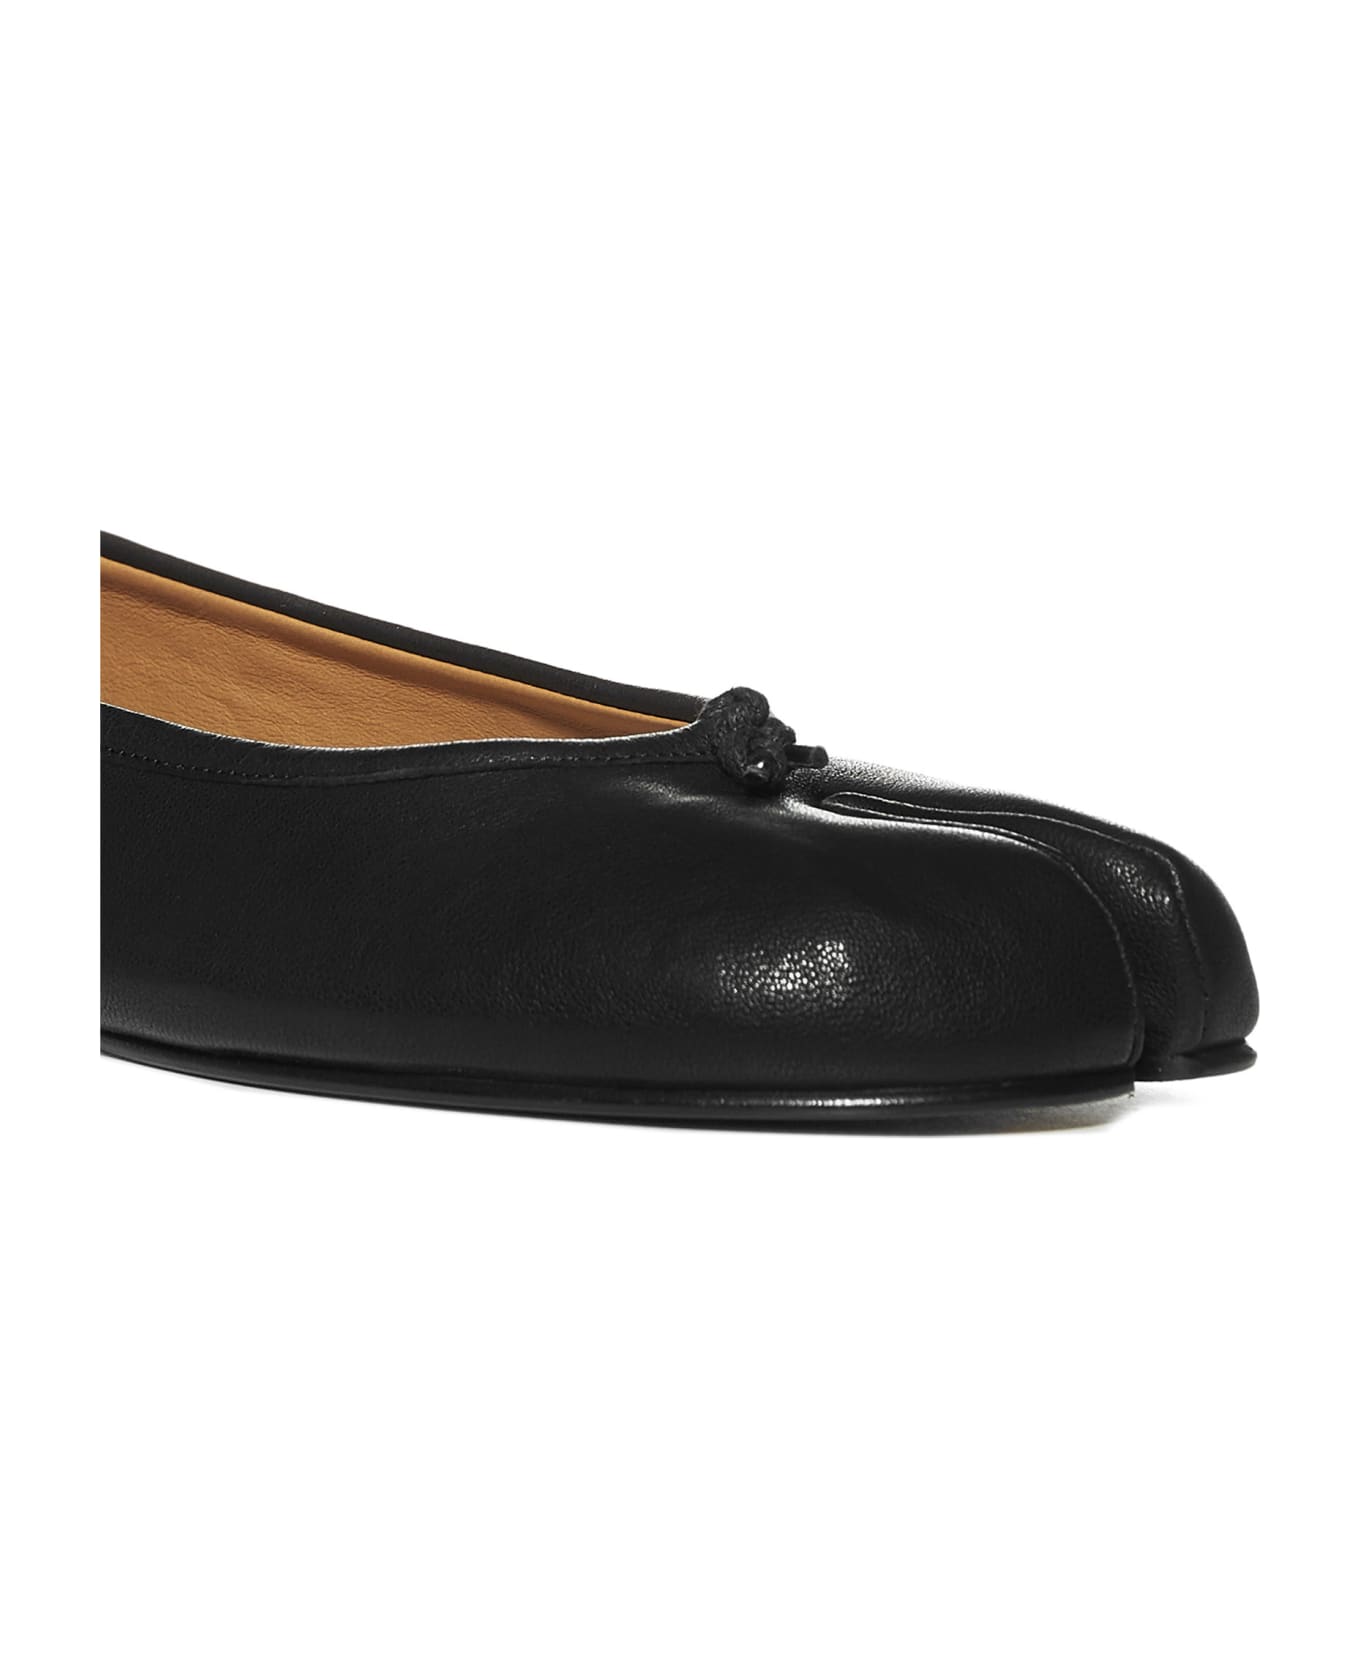 Maison Margiela Flat Shoes - Black